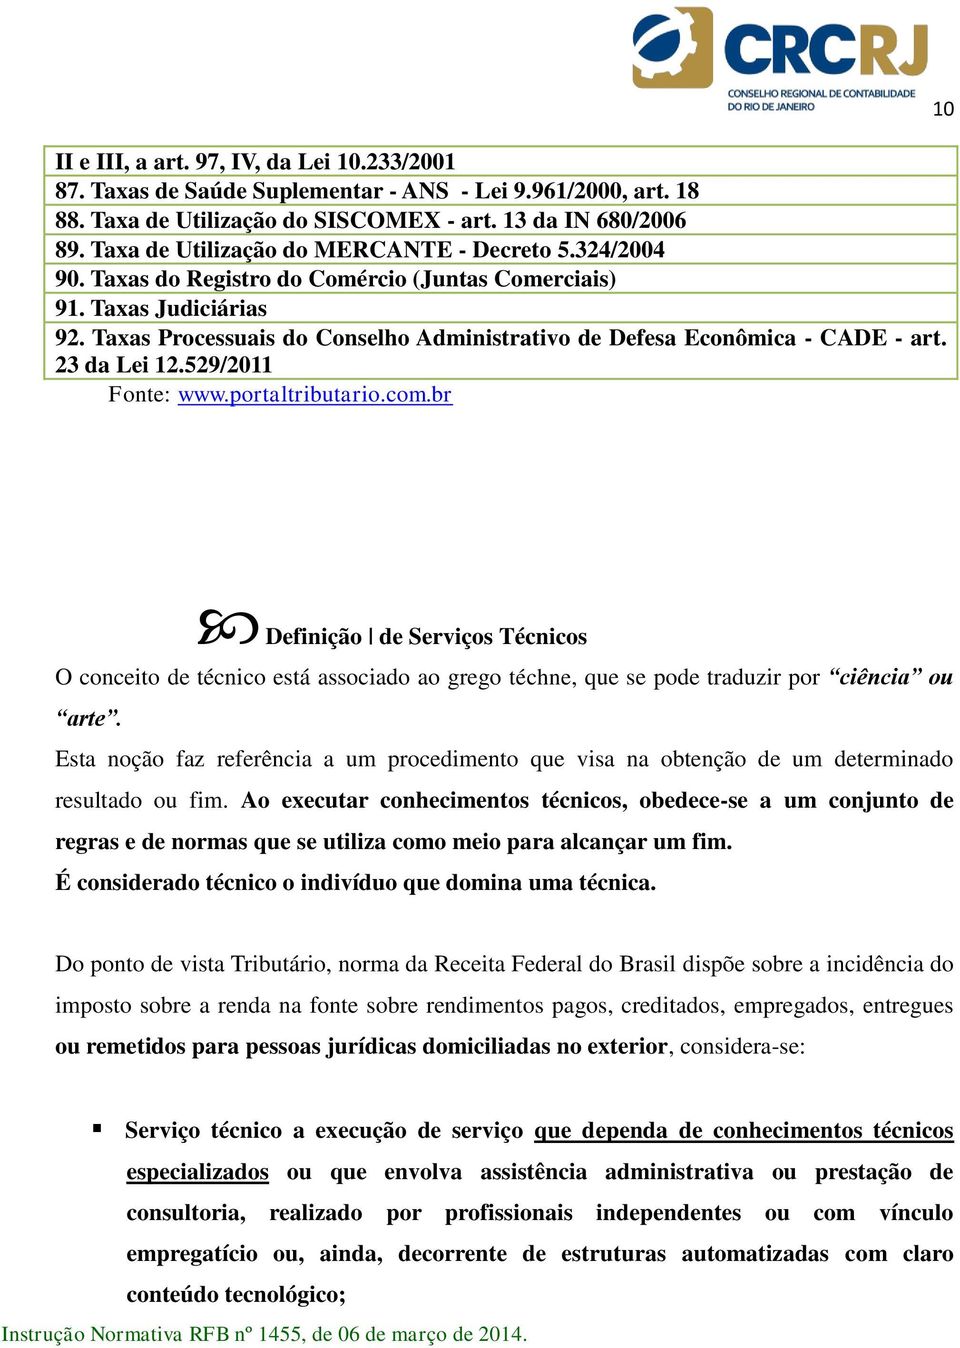 Taxas Processuais do Conselho Administrativo de Defesa Econômica - CADE - art. 23 da Lei 12.529/2011 Fonte: www.portaltributario.com.